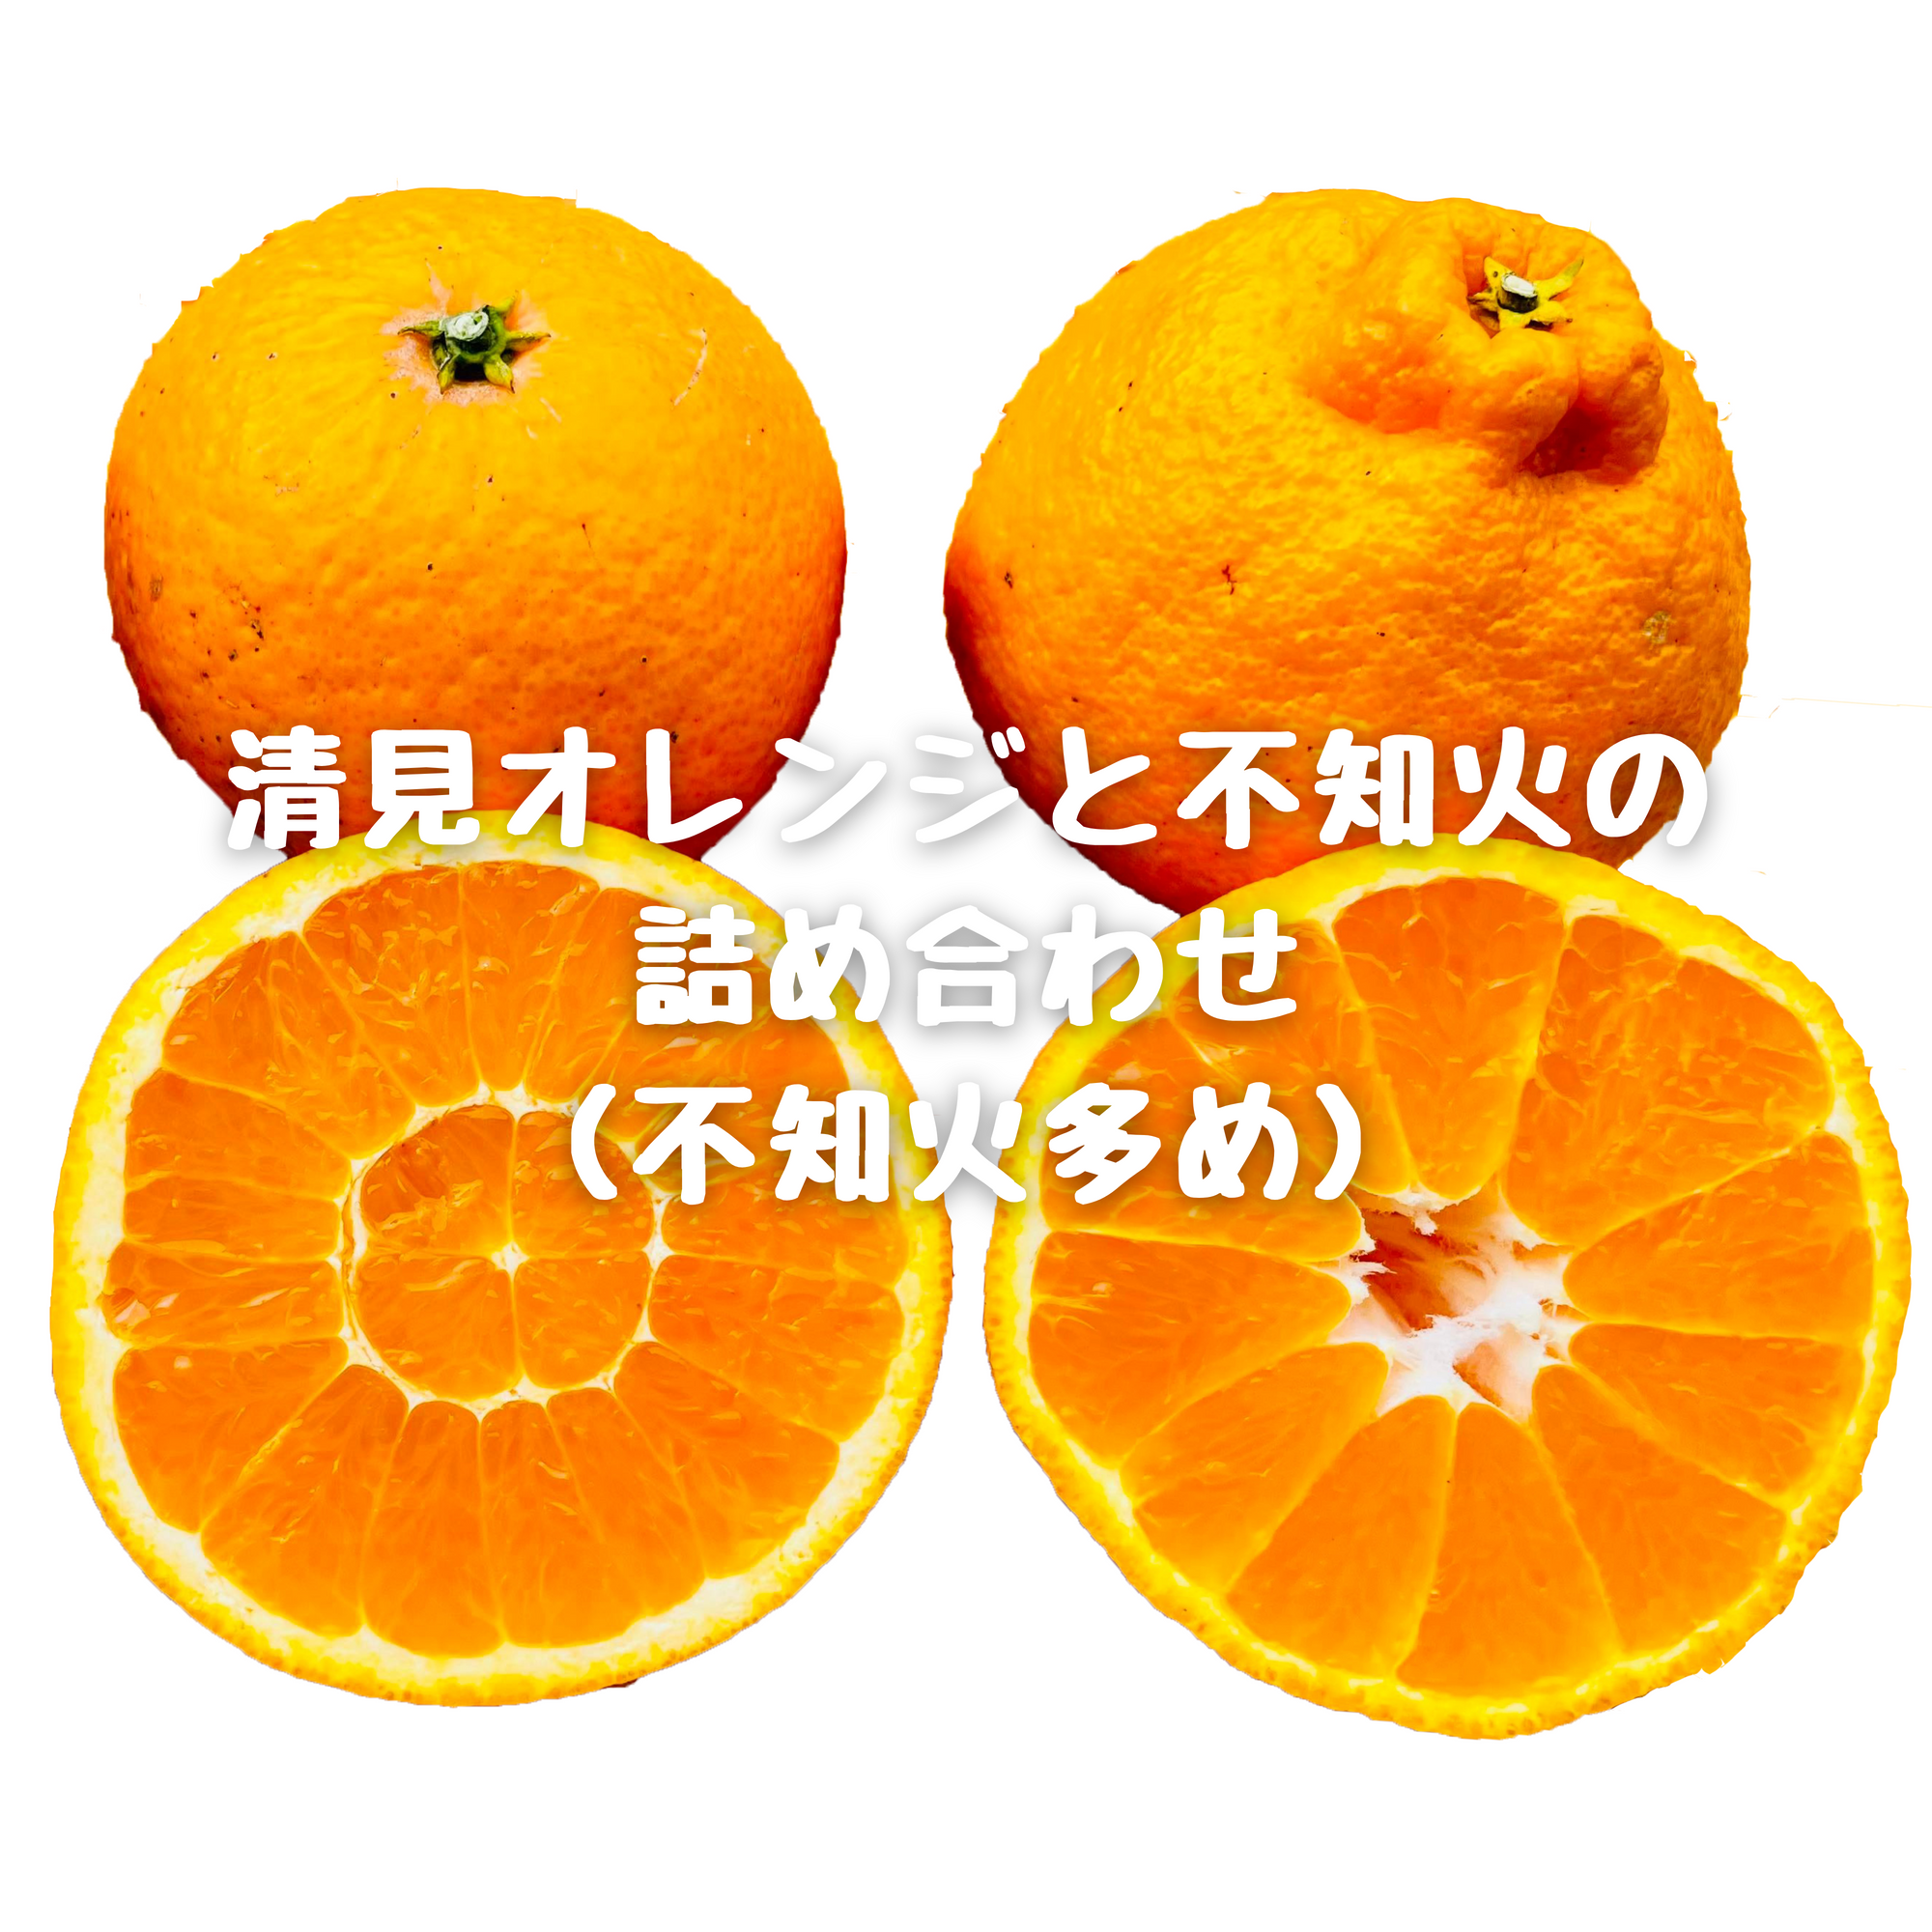 清見オレンジと不知火(デ〇ポン)の詰め合わせ(不知火多め)